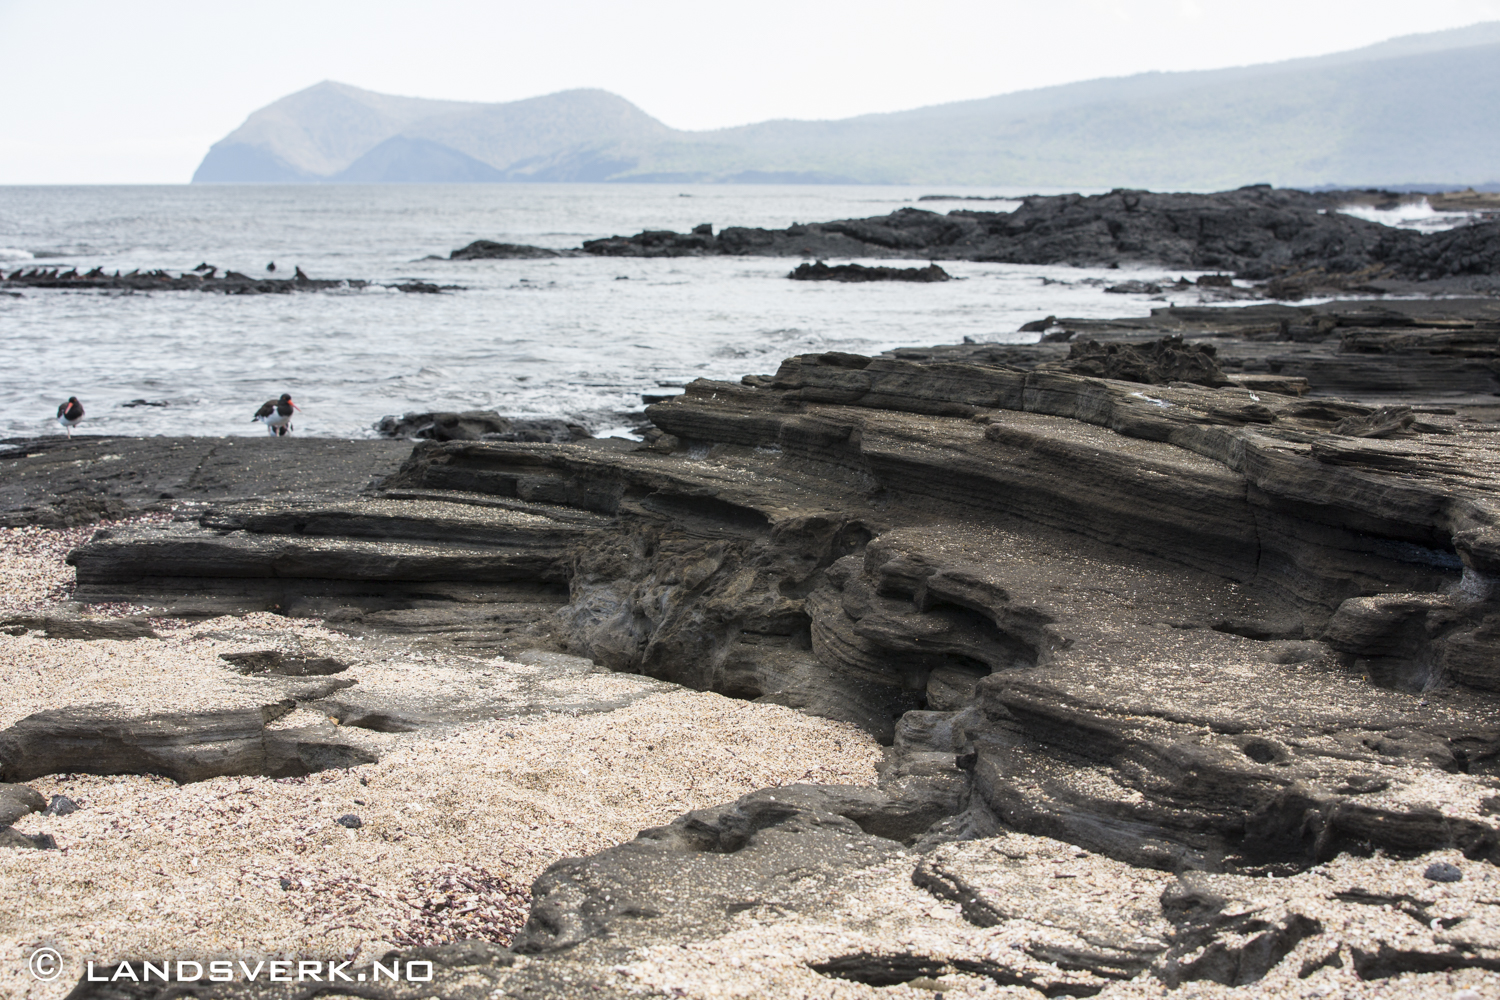 Puerto Egas, Isla Santiago, Galapagos. 

(Canon EOS 5D Mark III / Canon EF 70-200mm f/2.8 L IS II USM)